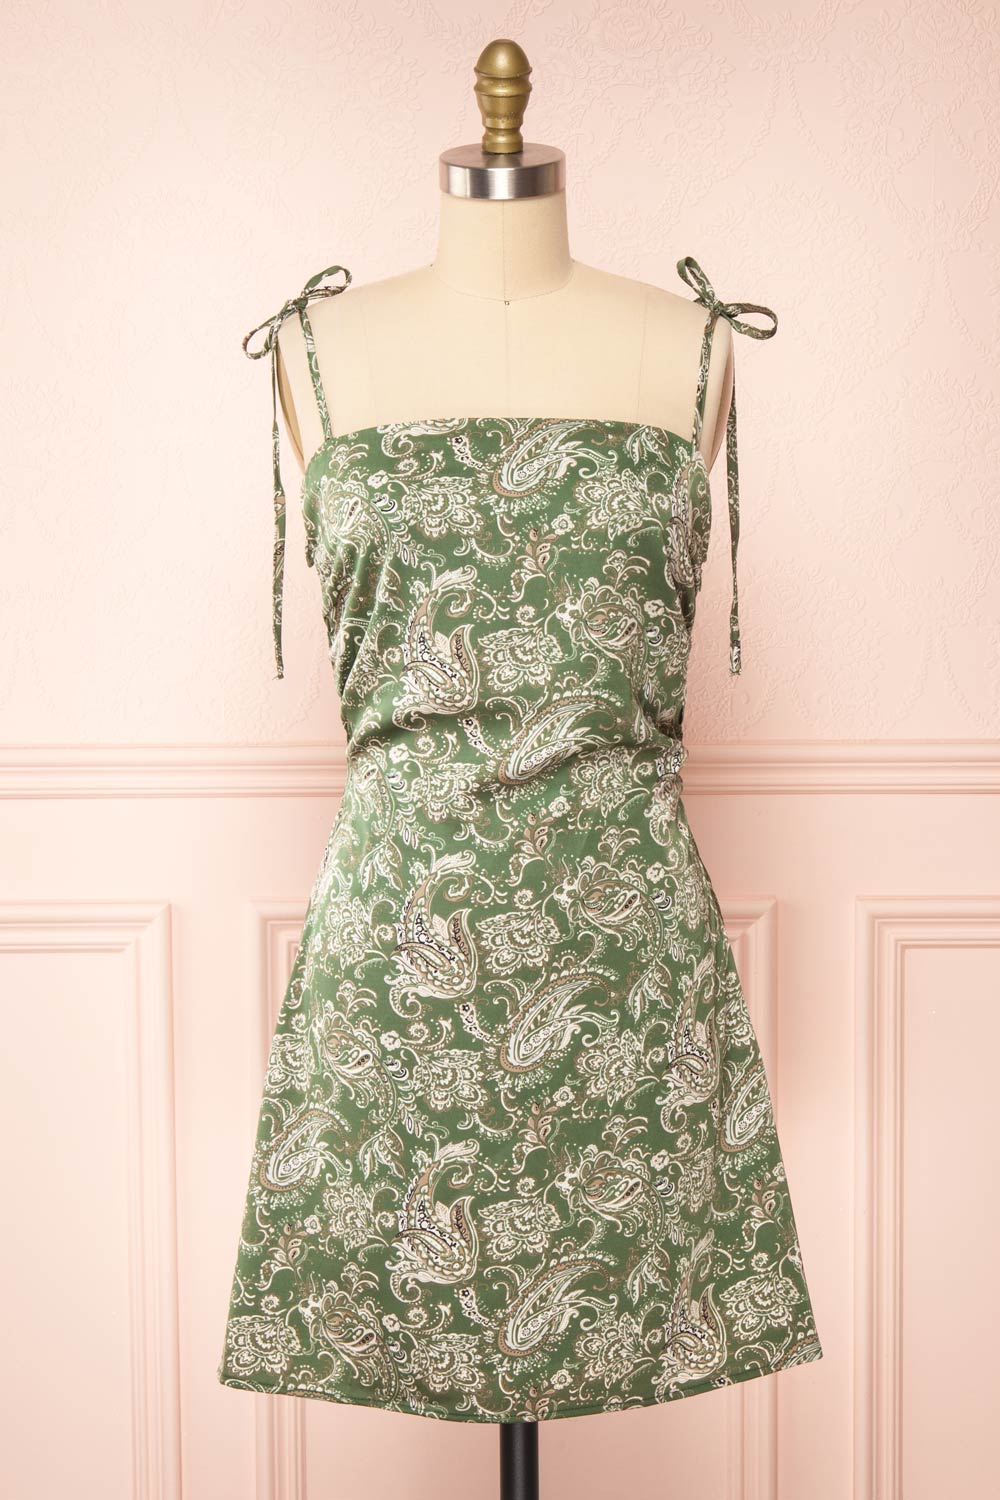 Pamela Short Paisley Satin Dress w/ Tie Straps | Boutique 1861 front view